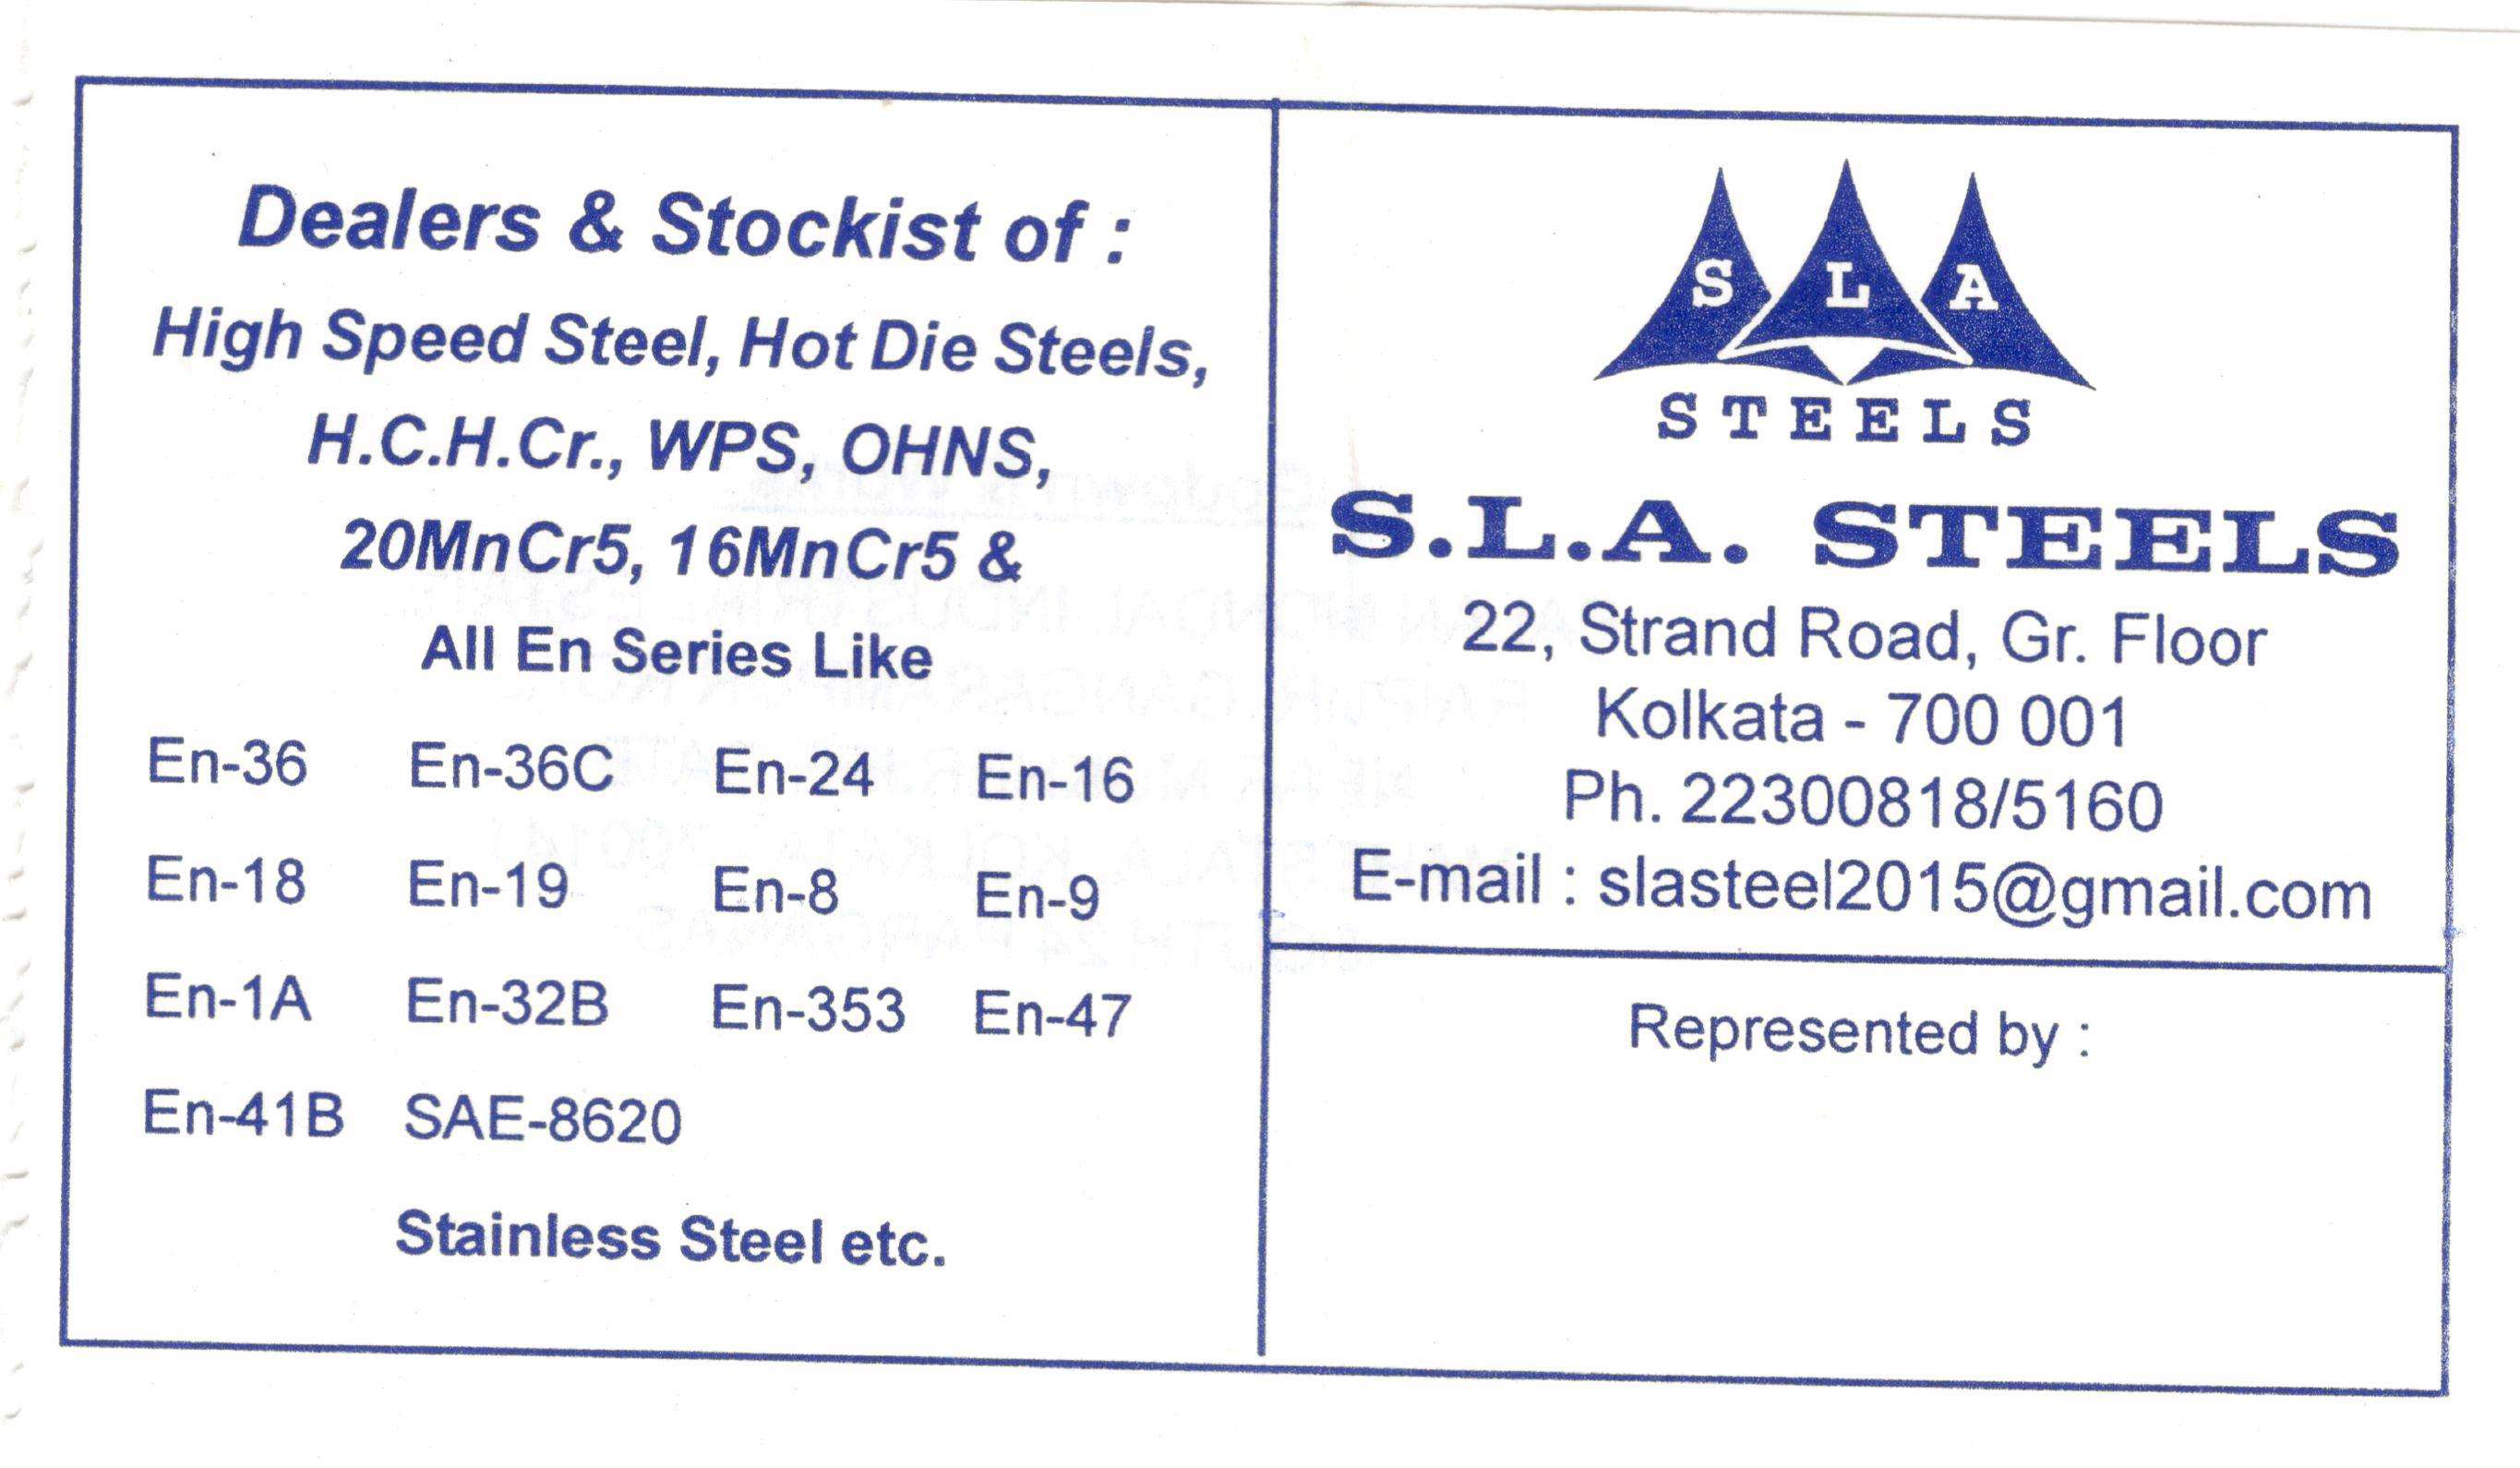 S. L. A. Steels